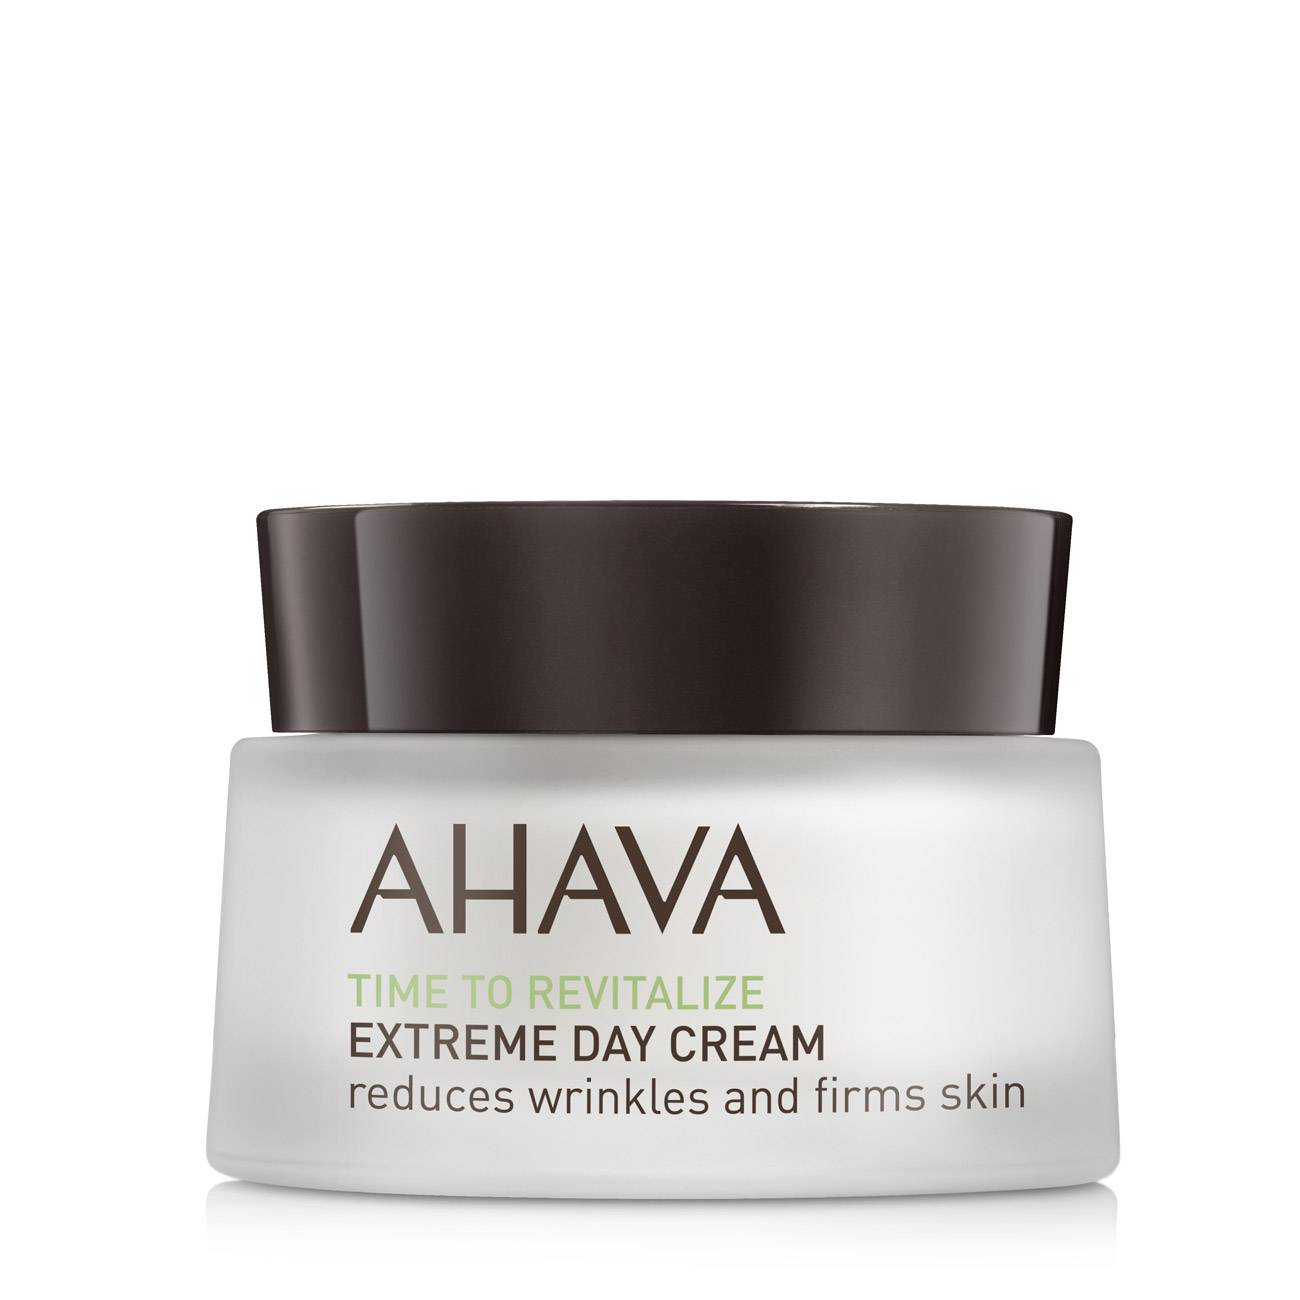 Crema hidratanta Ahava EXTREME DAY CREAM 50ml cu comanda online